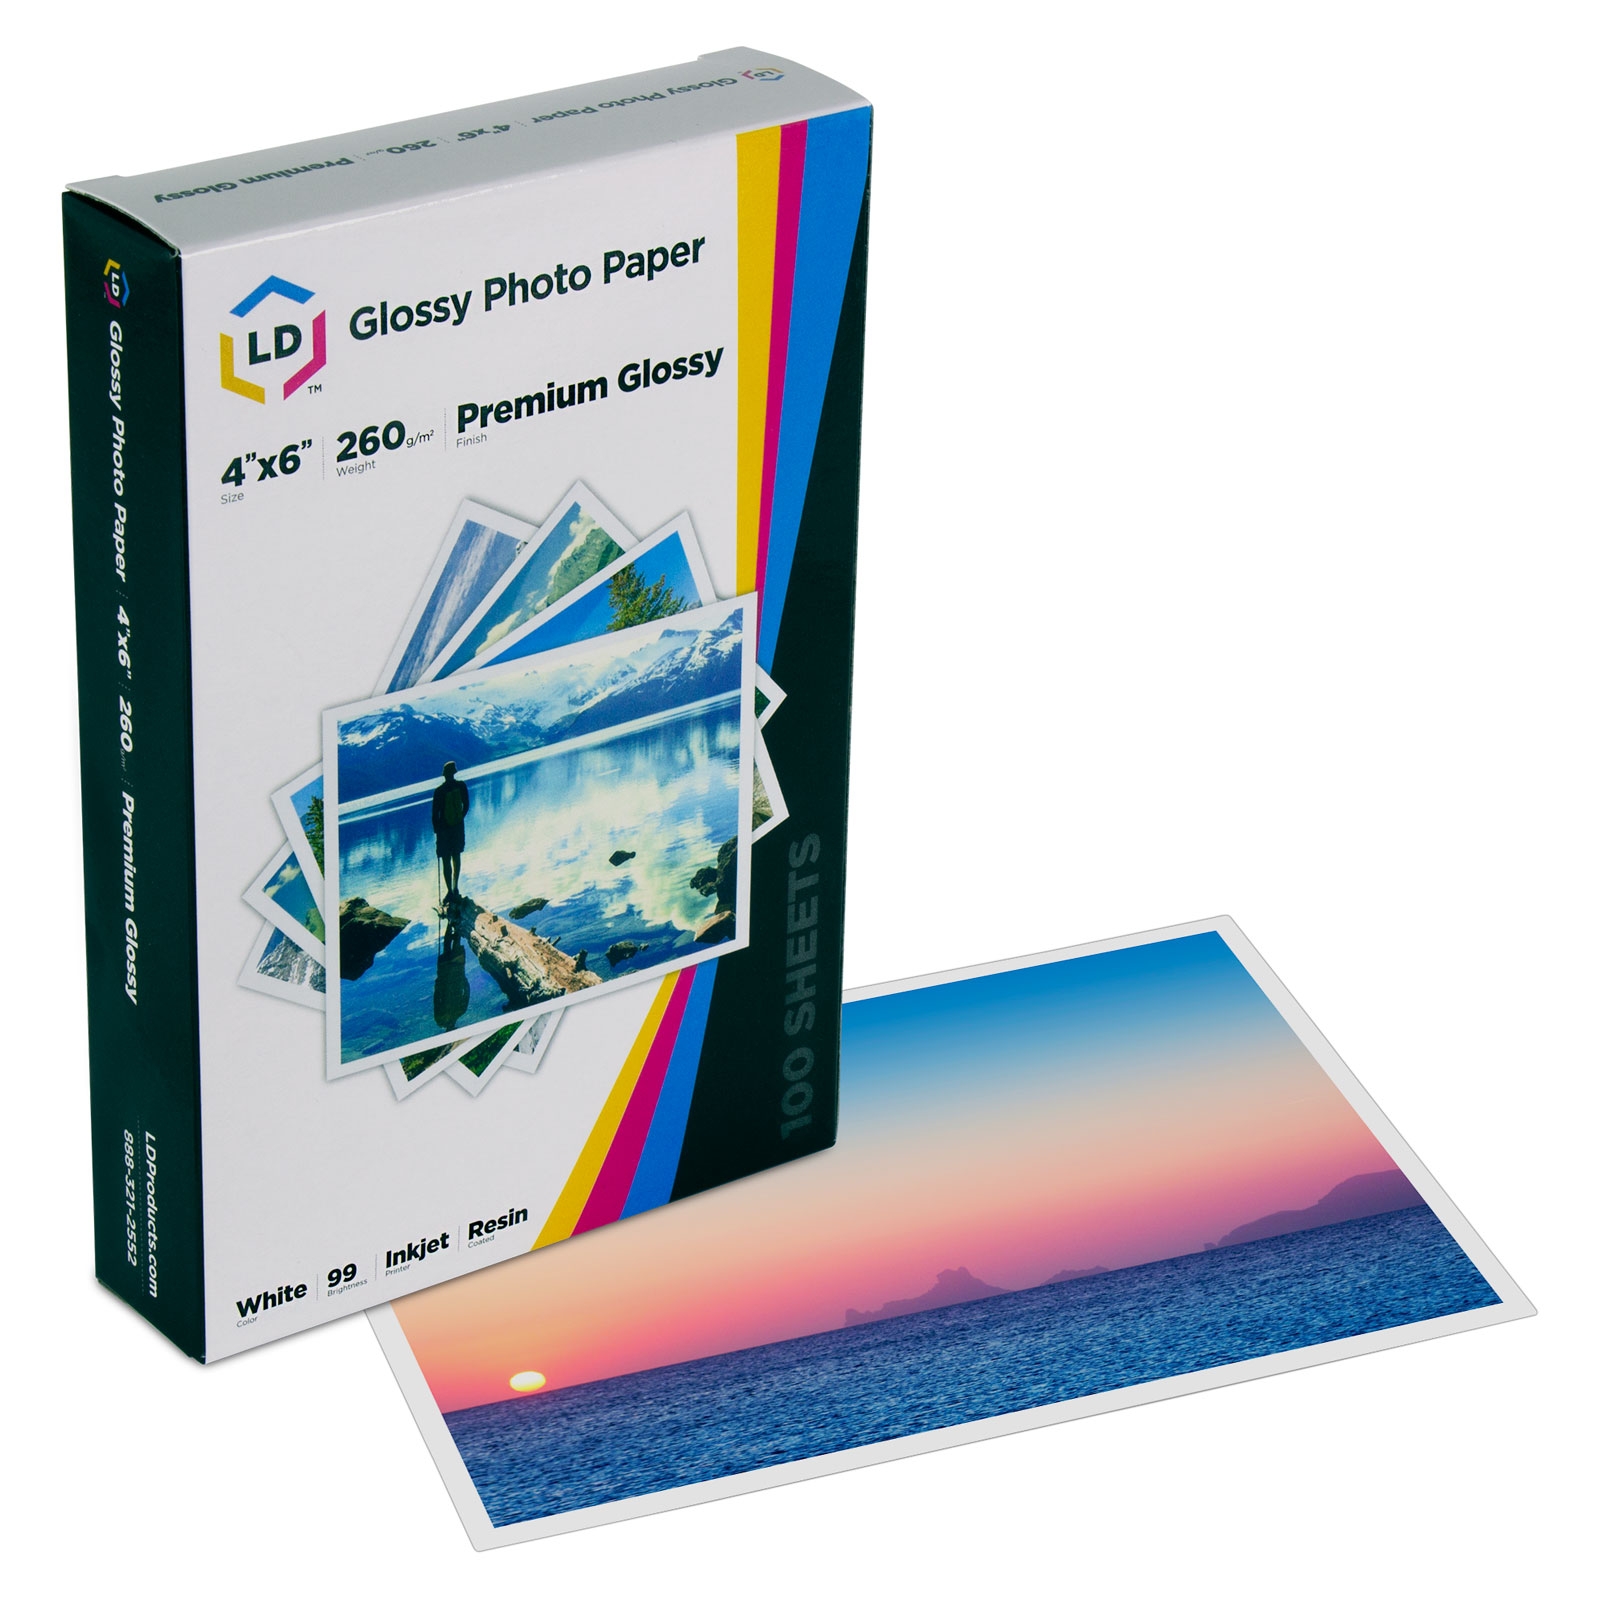 LD Premium Glossy Inkjet  Paper 100 Sheet Pack, Resin Coated .